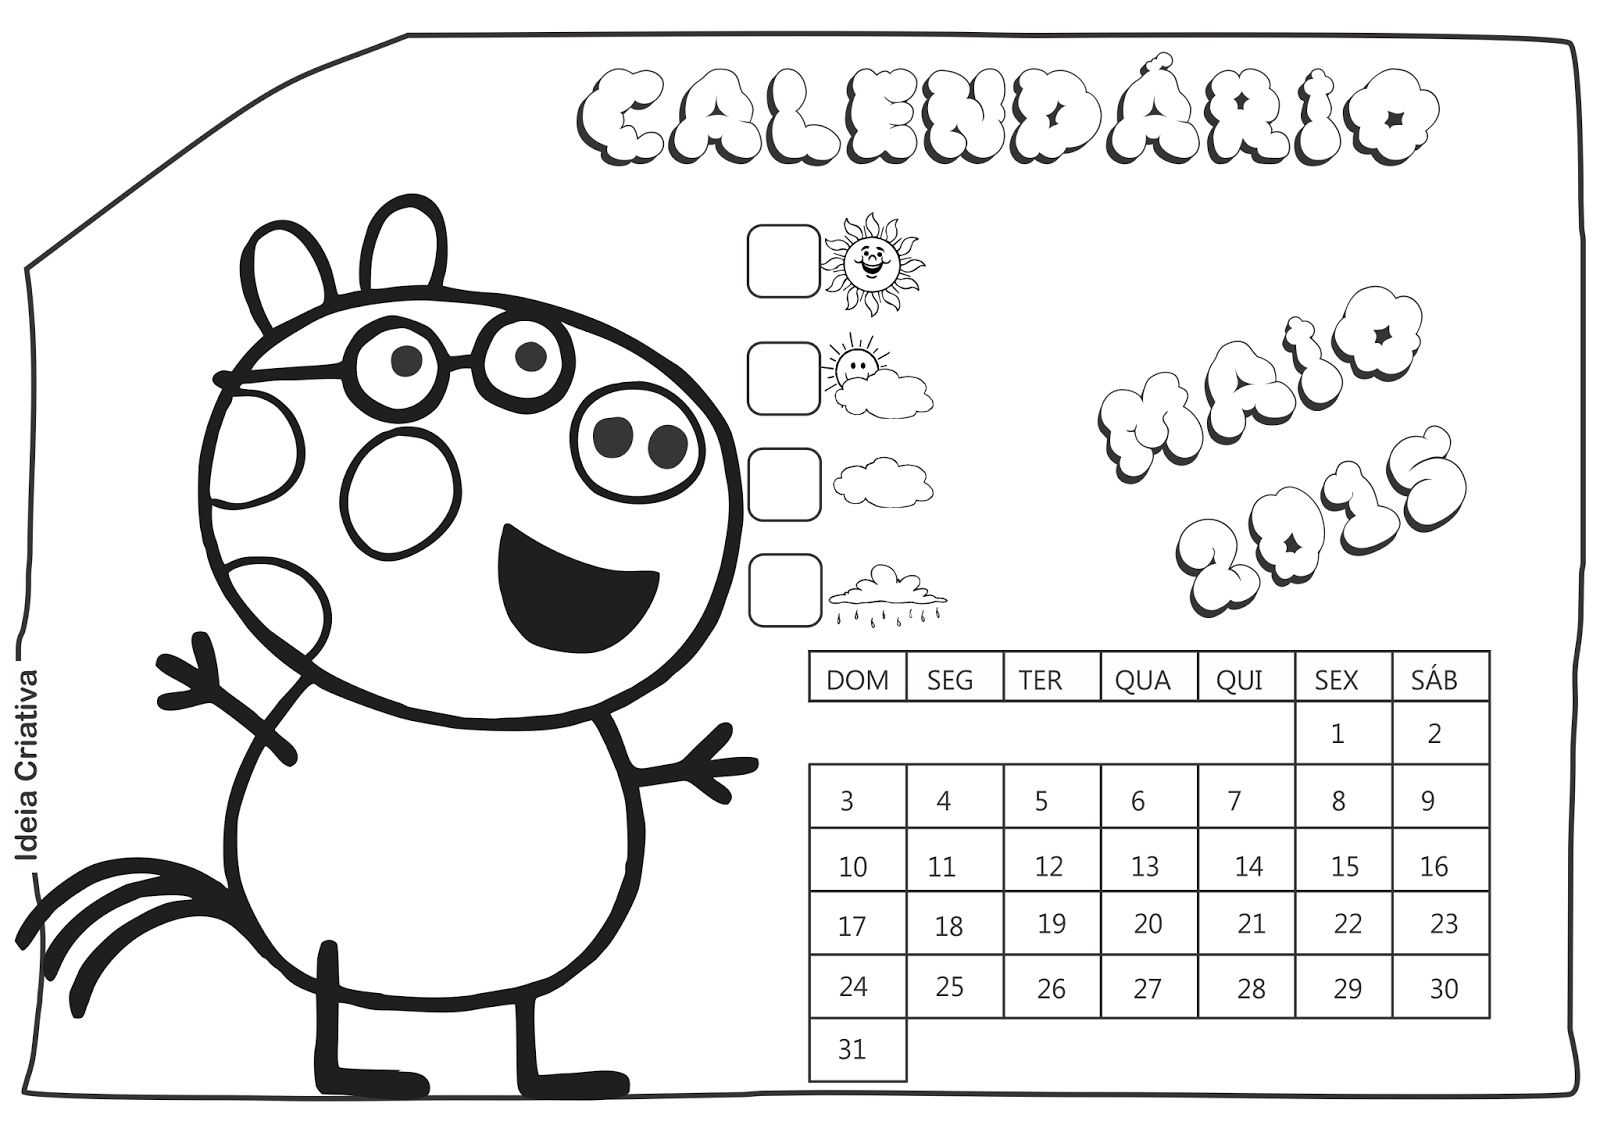 Calendário Maio 2015 Peppa Pig e Seus Amigos para Imprimir Grátis